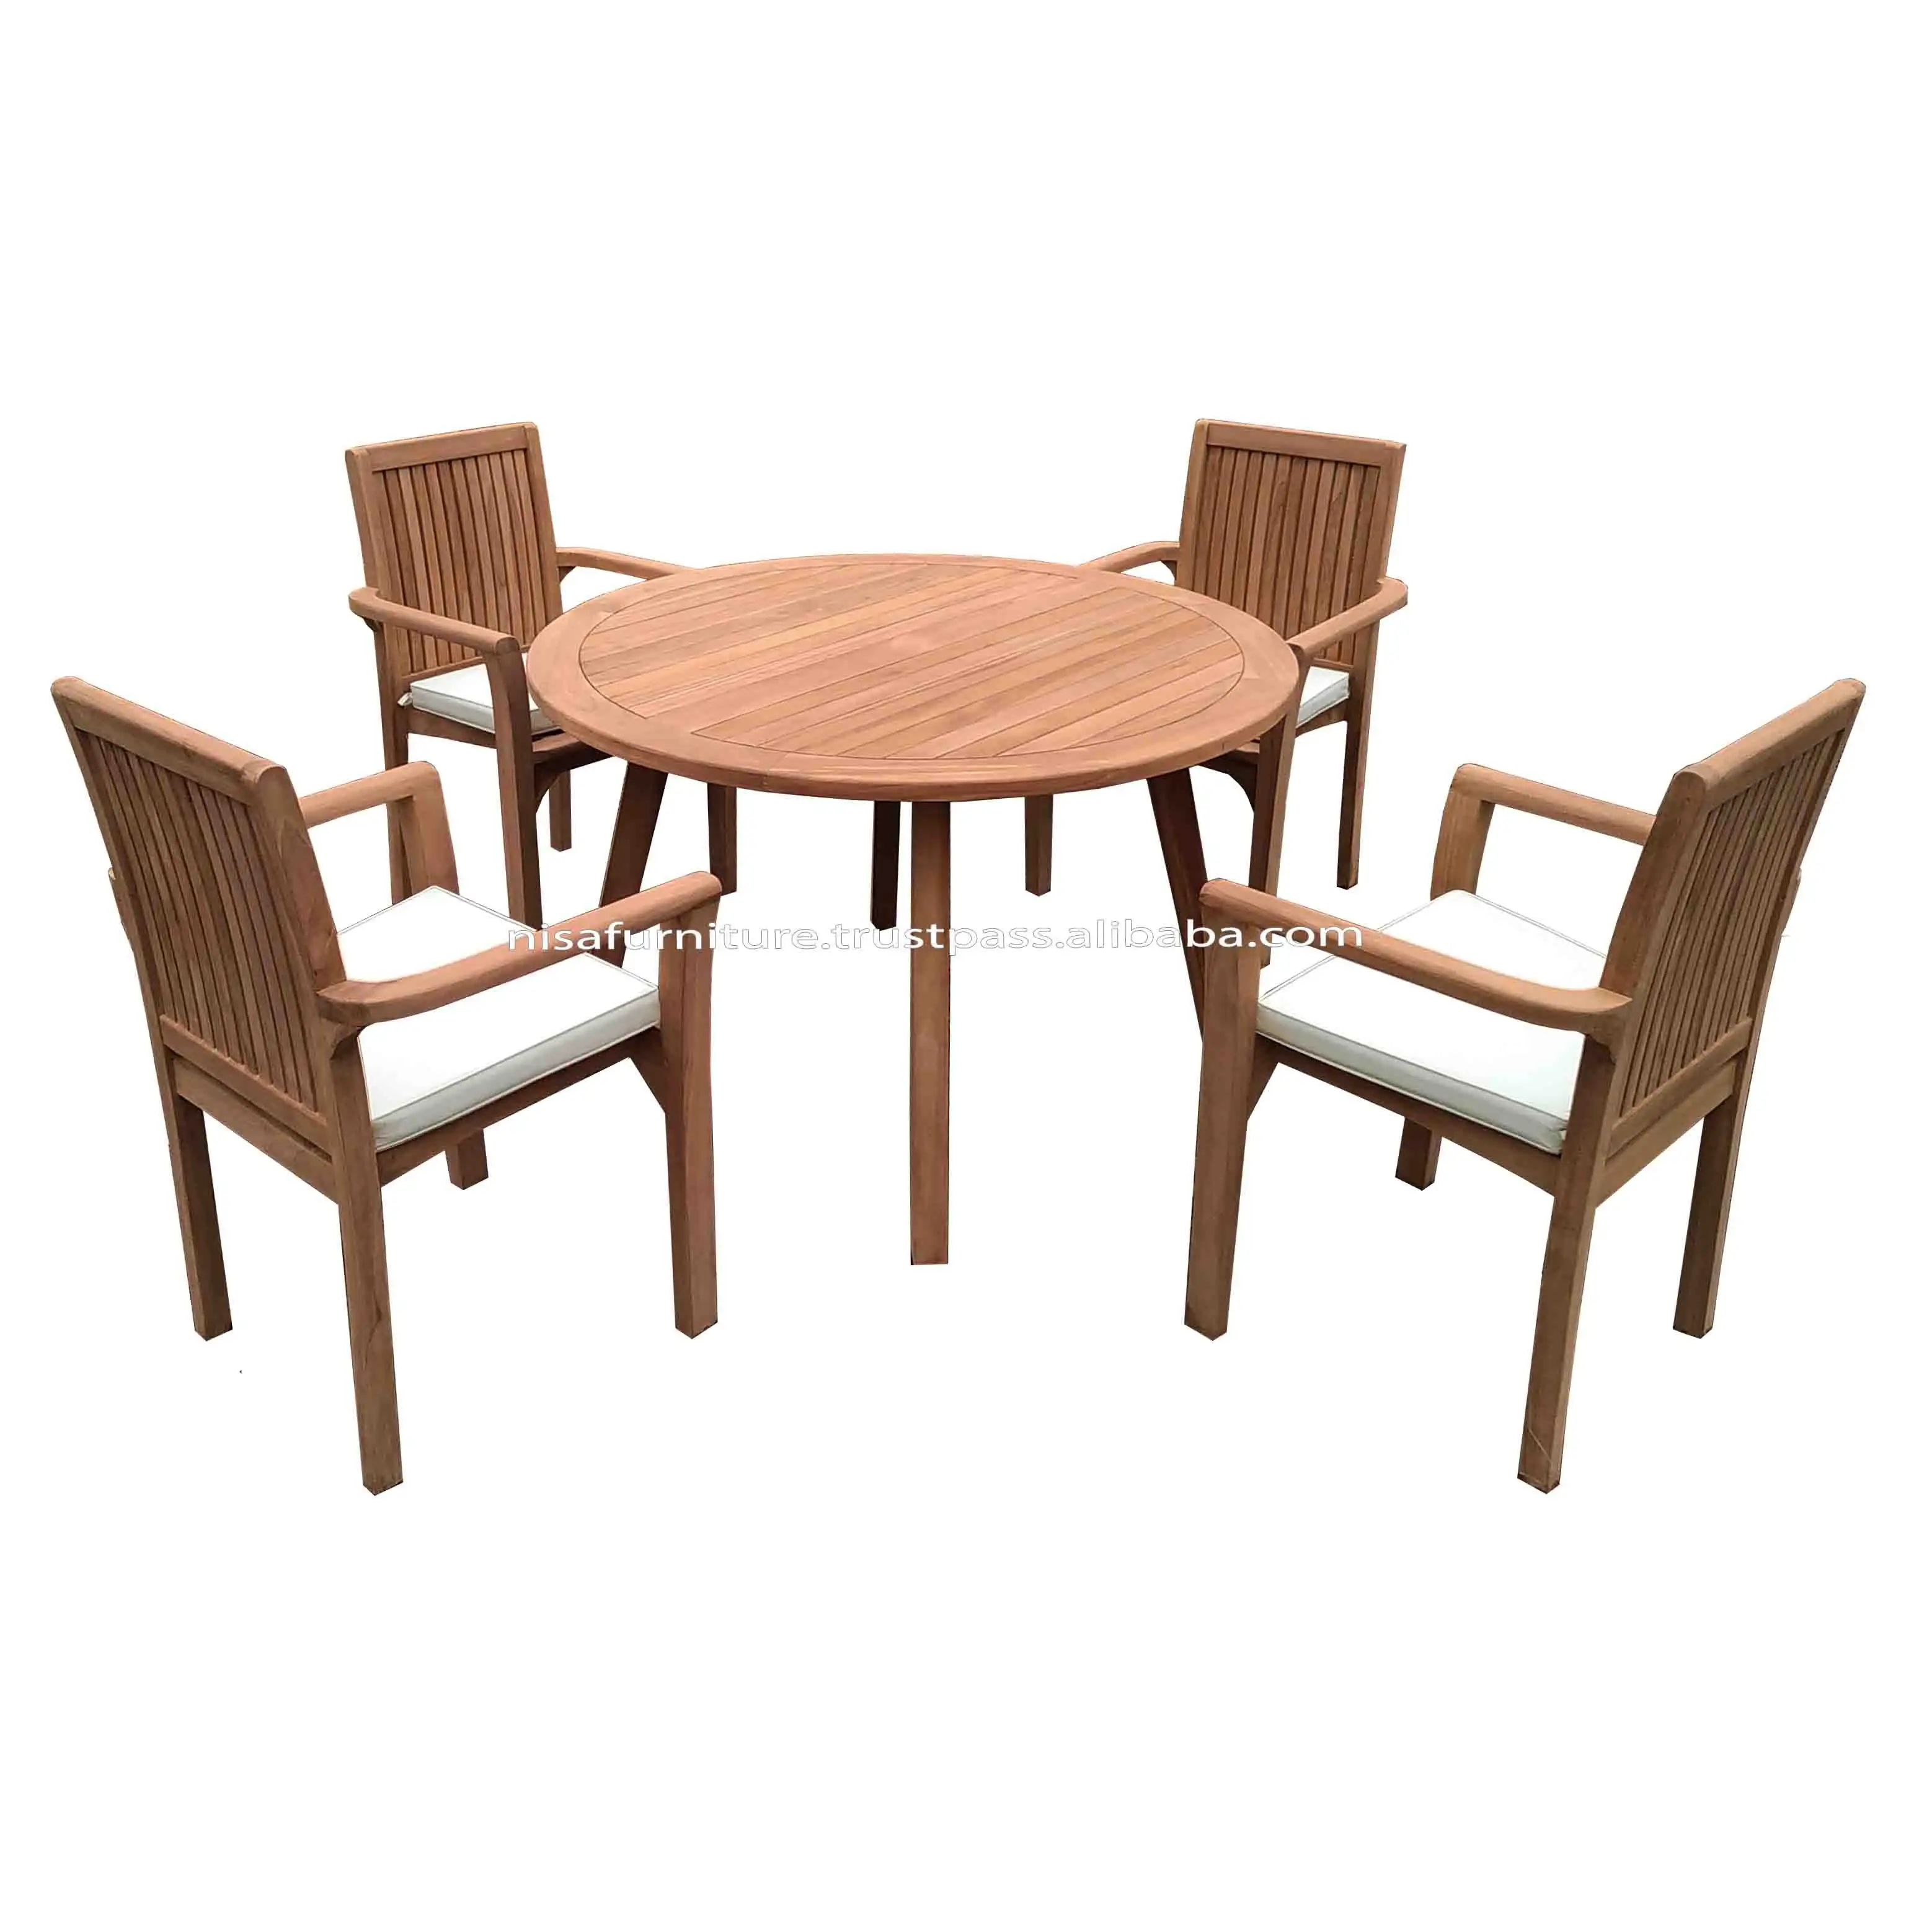 원형 테이블 현대적인 디자인 스태킹 의자 세로 칸막이 티크 식당 의자와 테이블 야외 파티오 정원 세트 가구